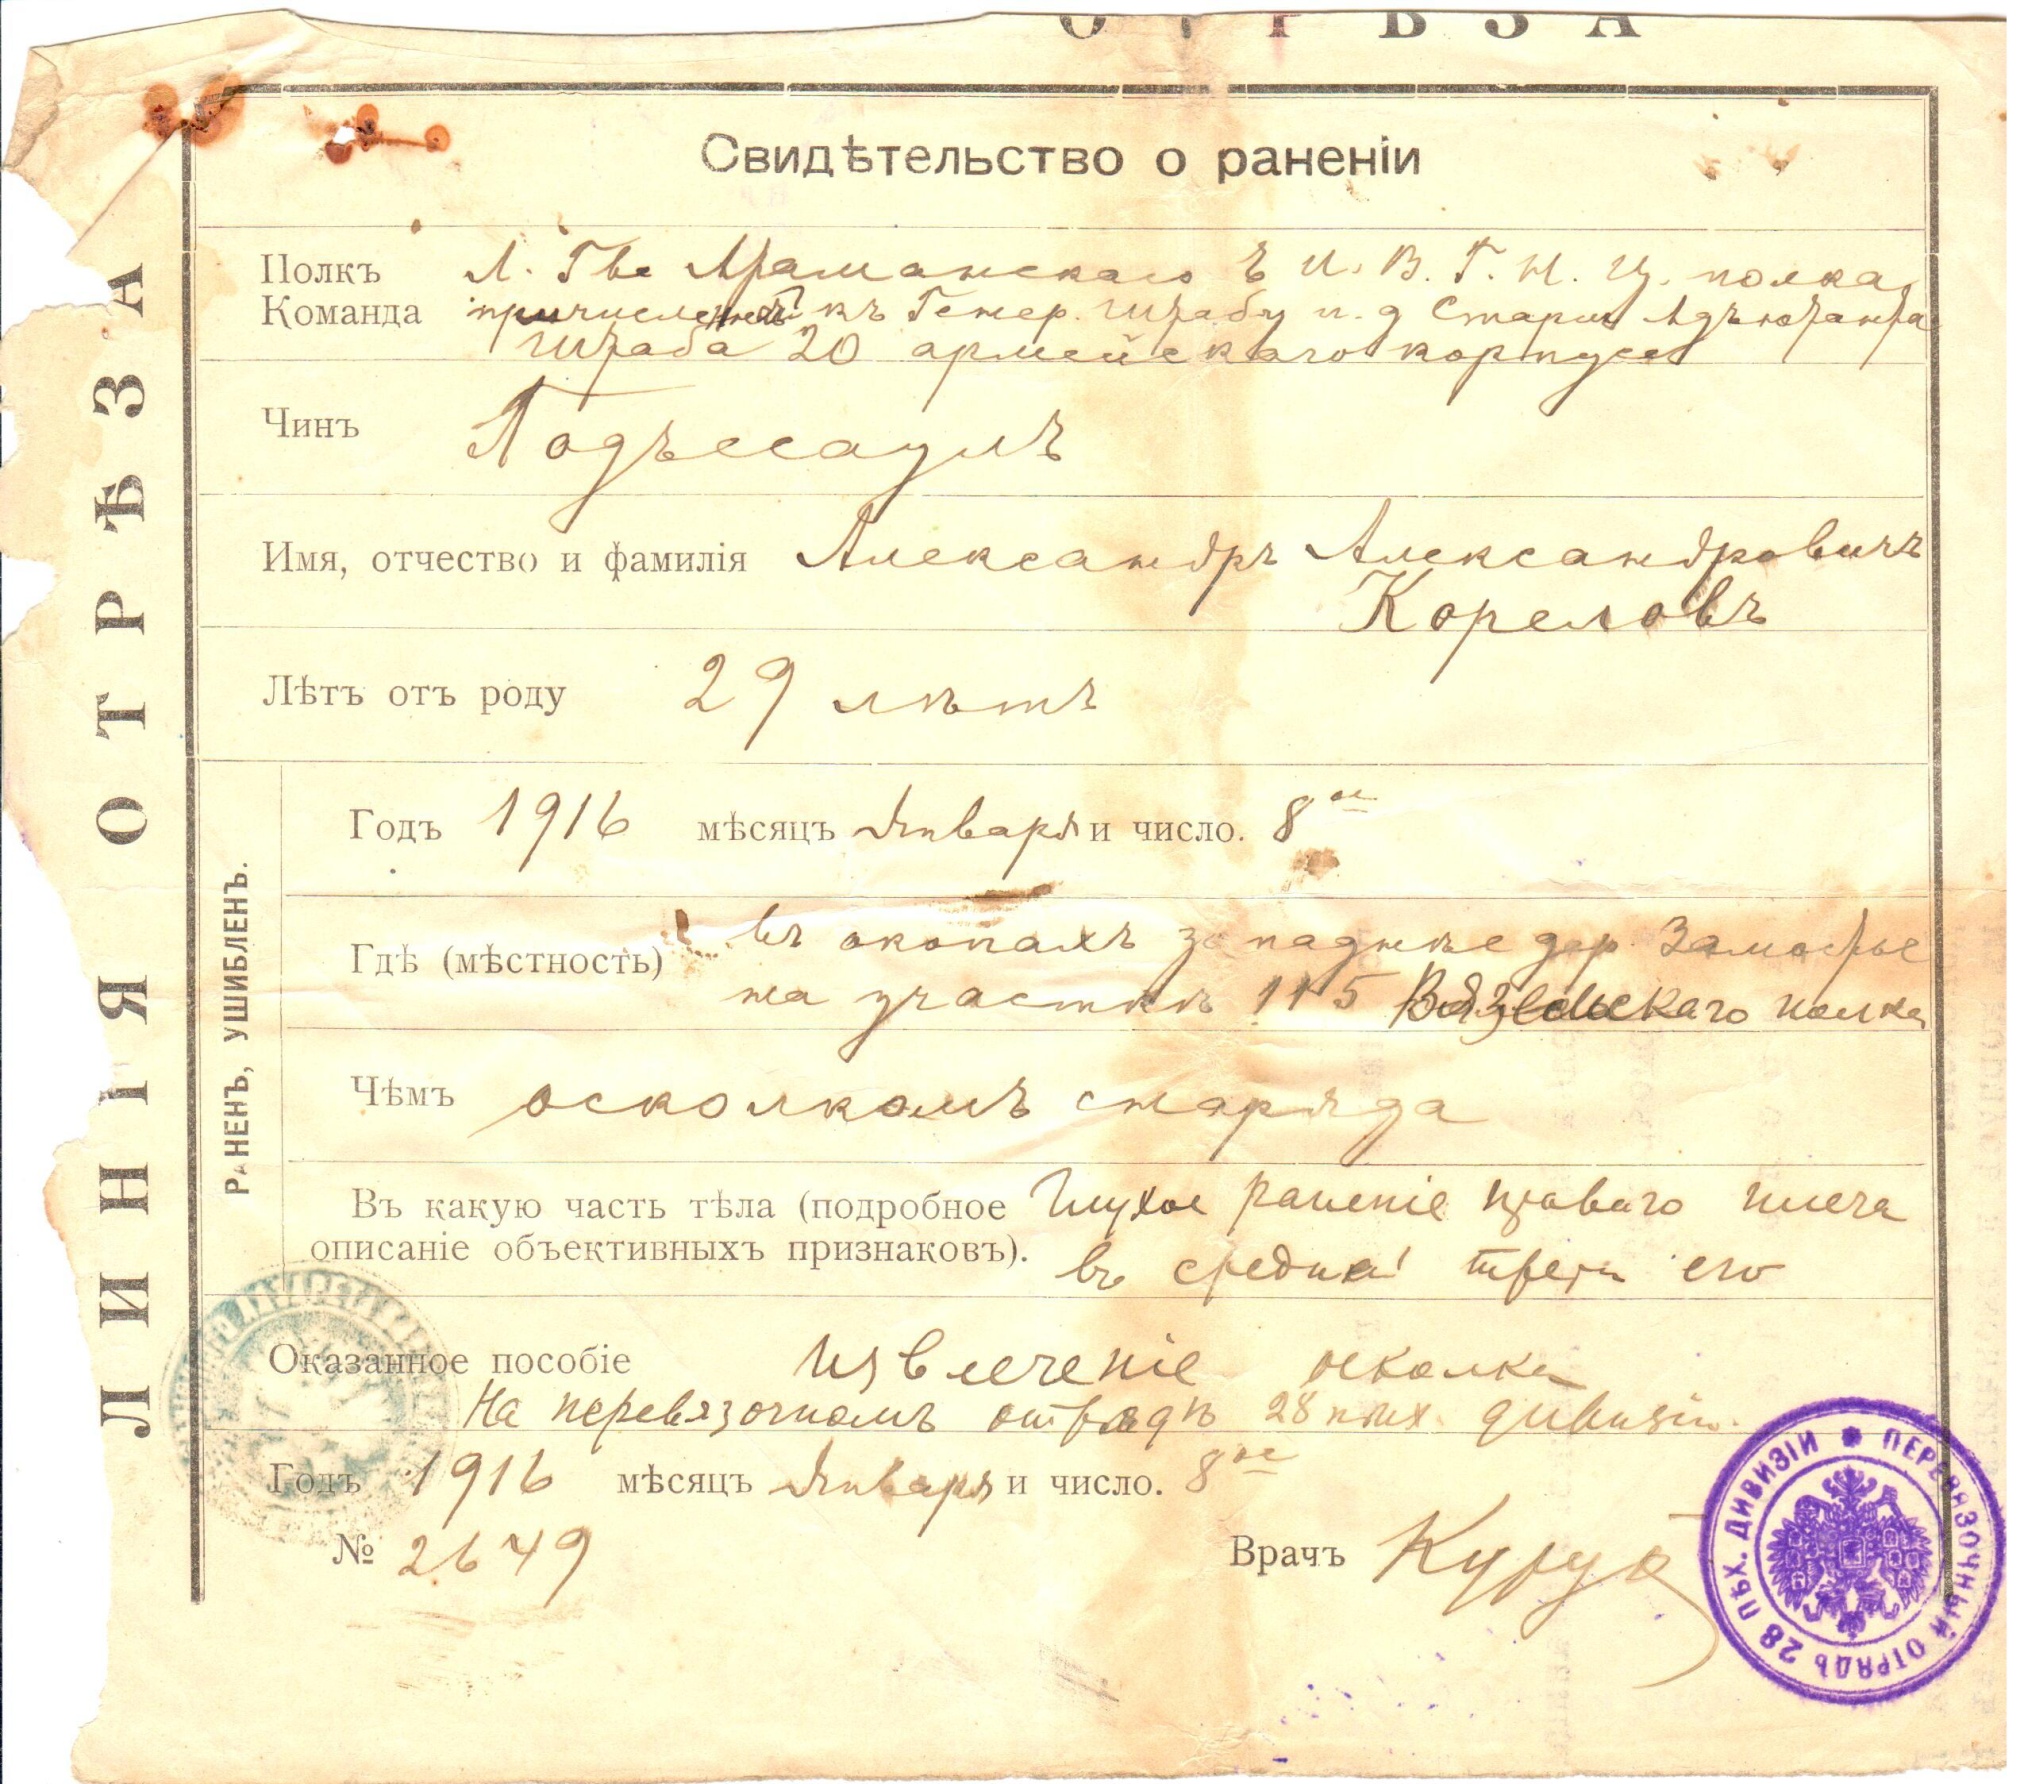 Свидетельство о ранении подъесаула Карелова А.А. 1916 год.